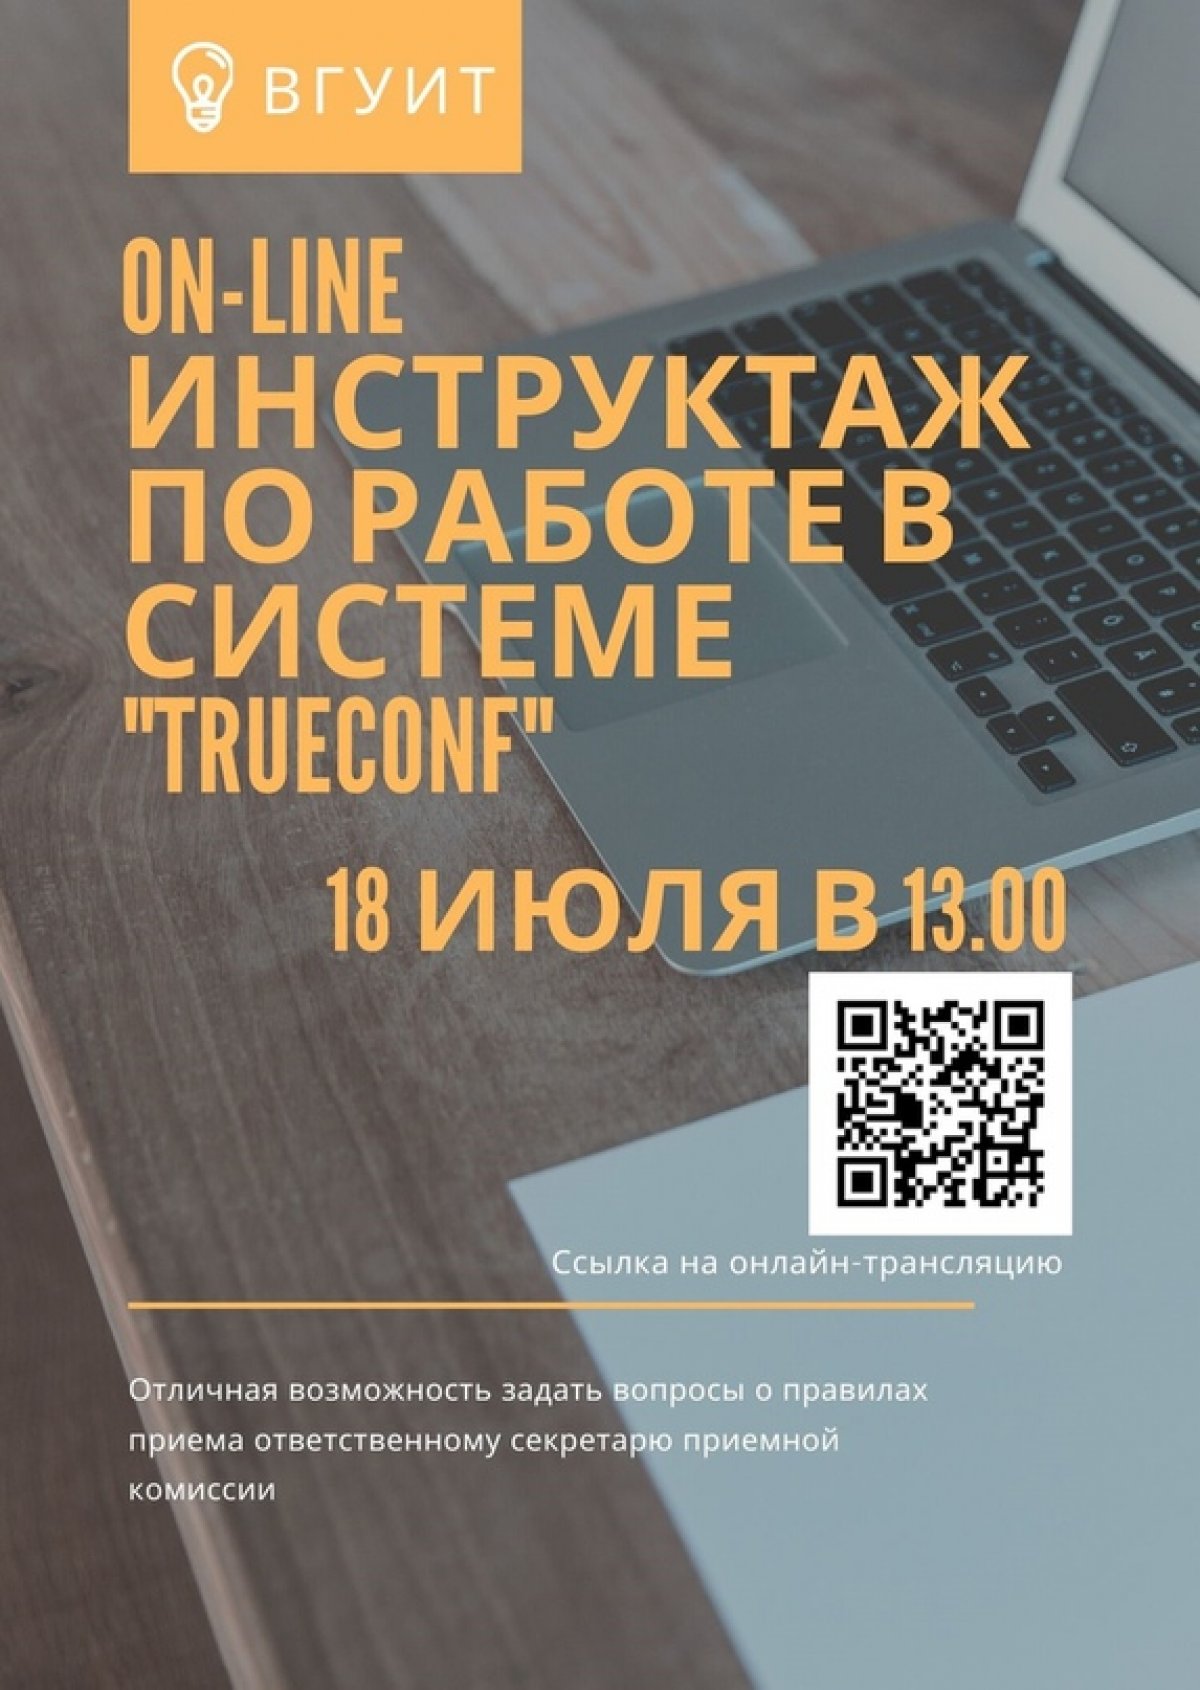 ⚡ 18 июля в 13.00 во ВГУИТ пройдет On-line инструктаж по работе в системе TrueConf!